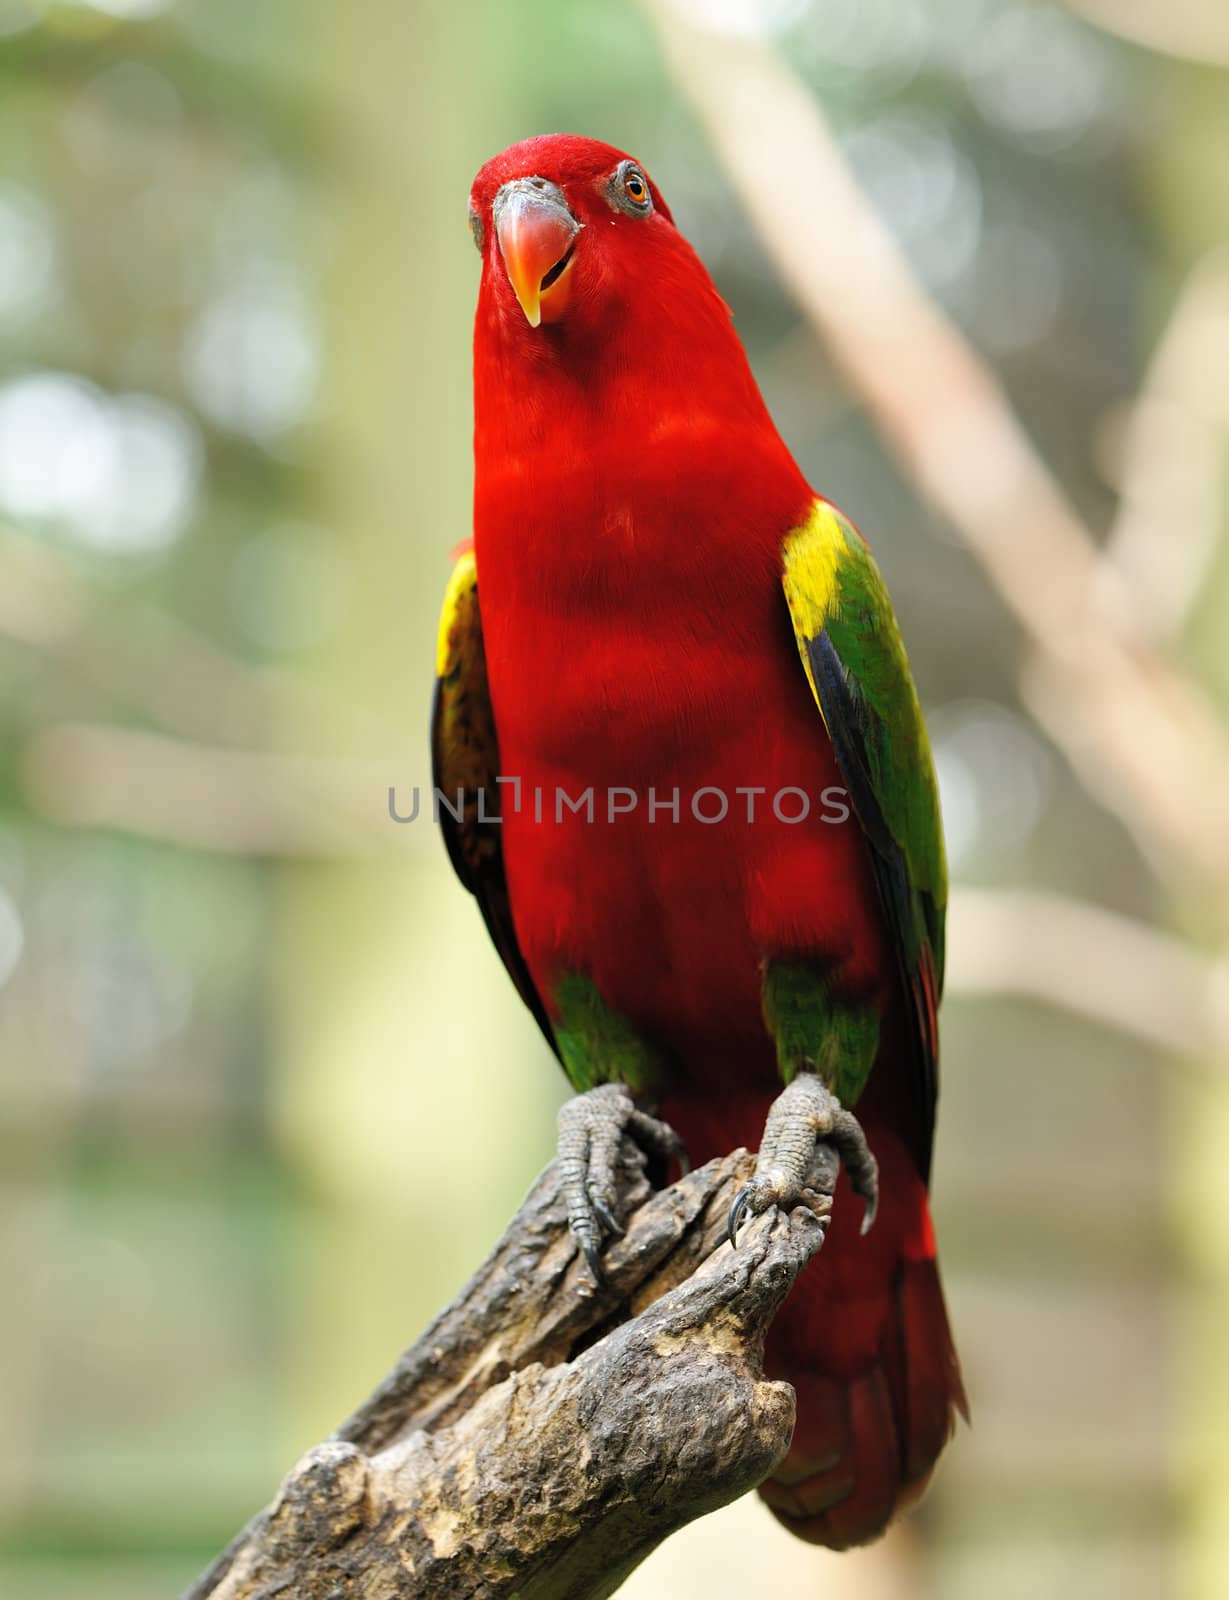 Beautiful red parrot bird close up